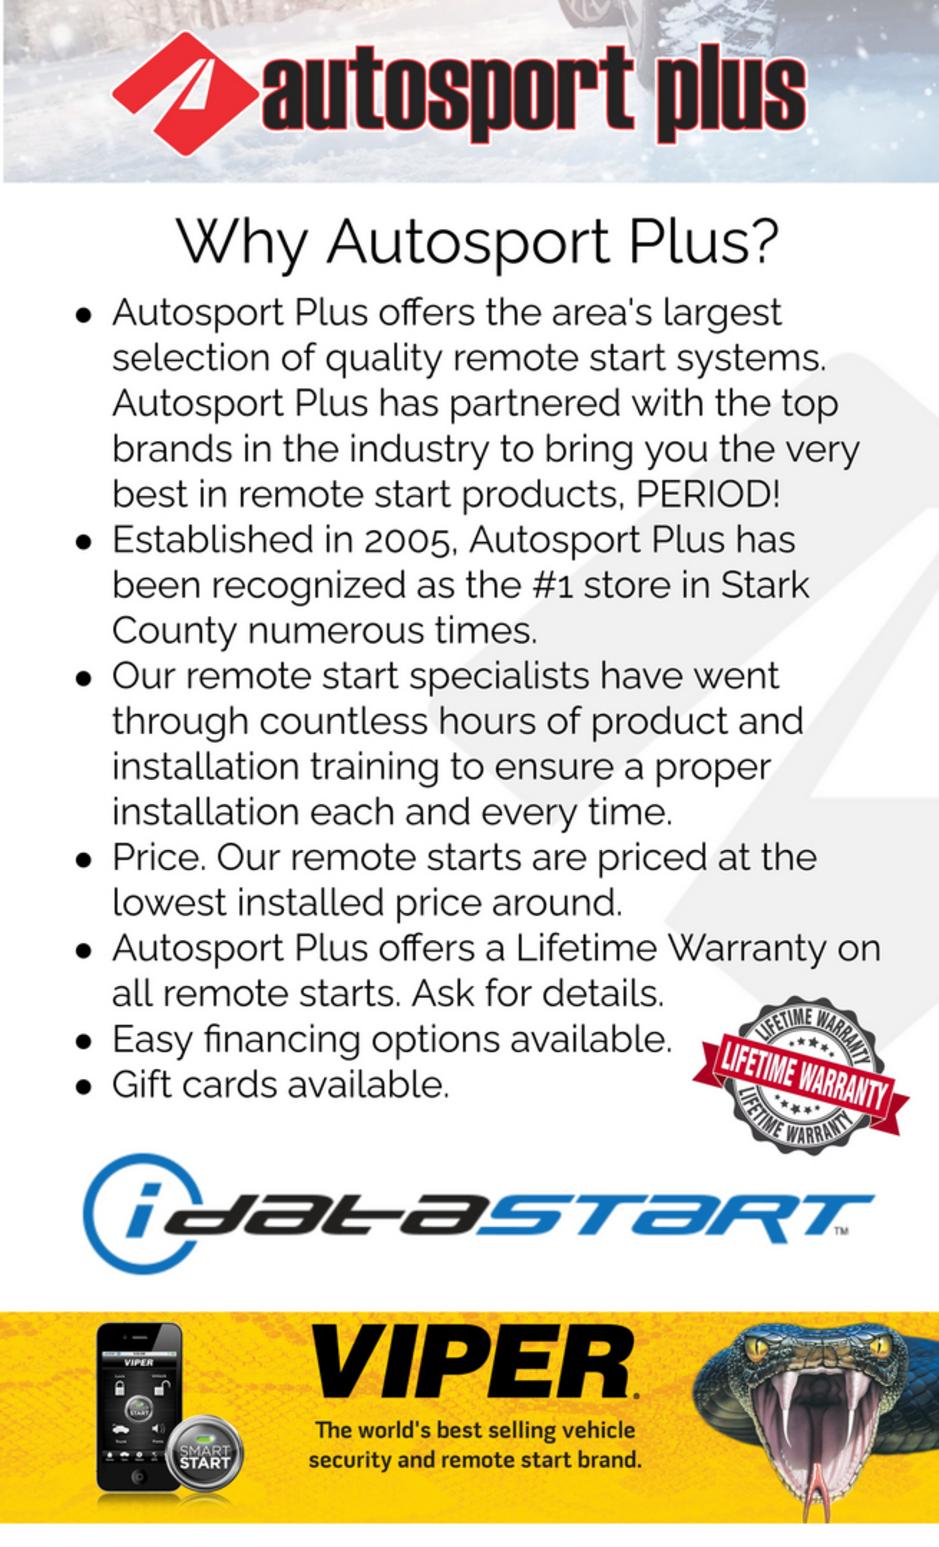 Remote Start for sale in Canton Ohio.